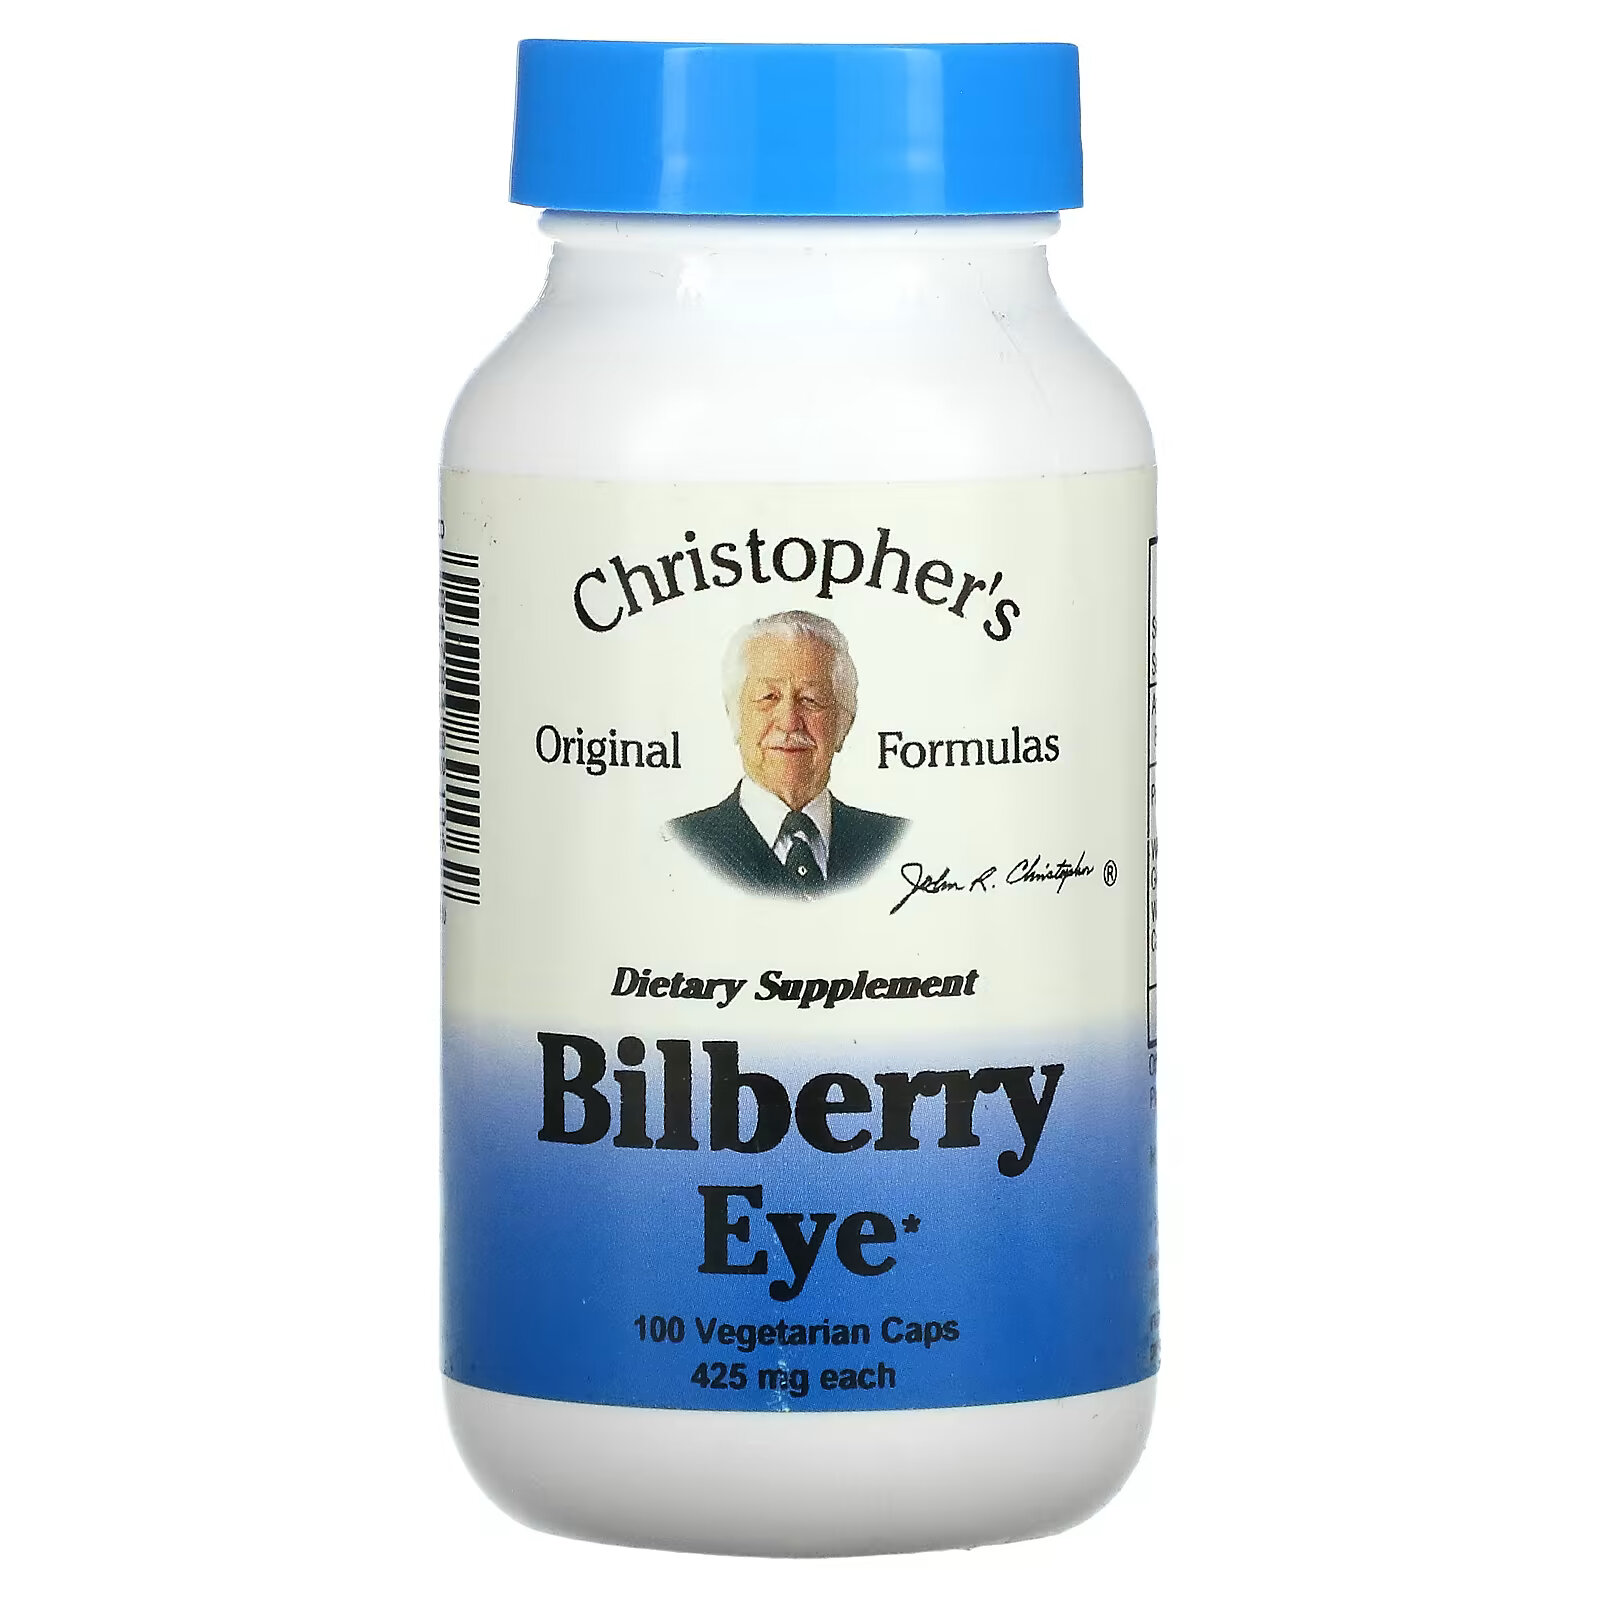 Christopher's Original Formulas, Черника для глаз, 425 мг, 100 вегетарианских капсул christopher s original formulas средство для поддержки надпочечников 425 мг 100 вегетарианских капсул